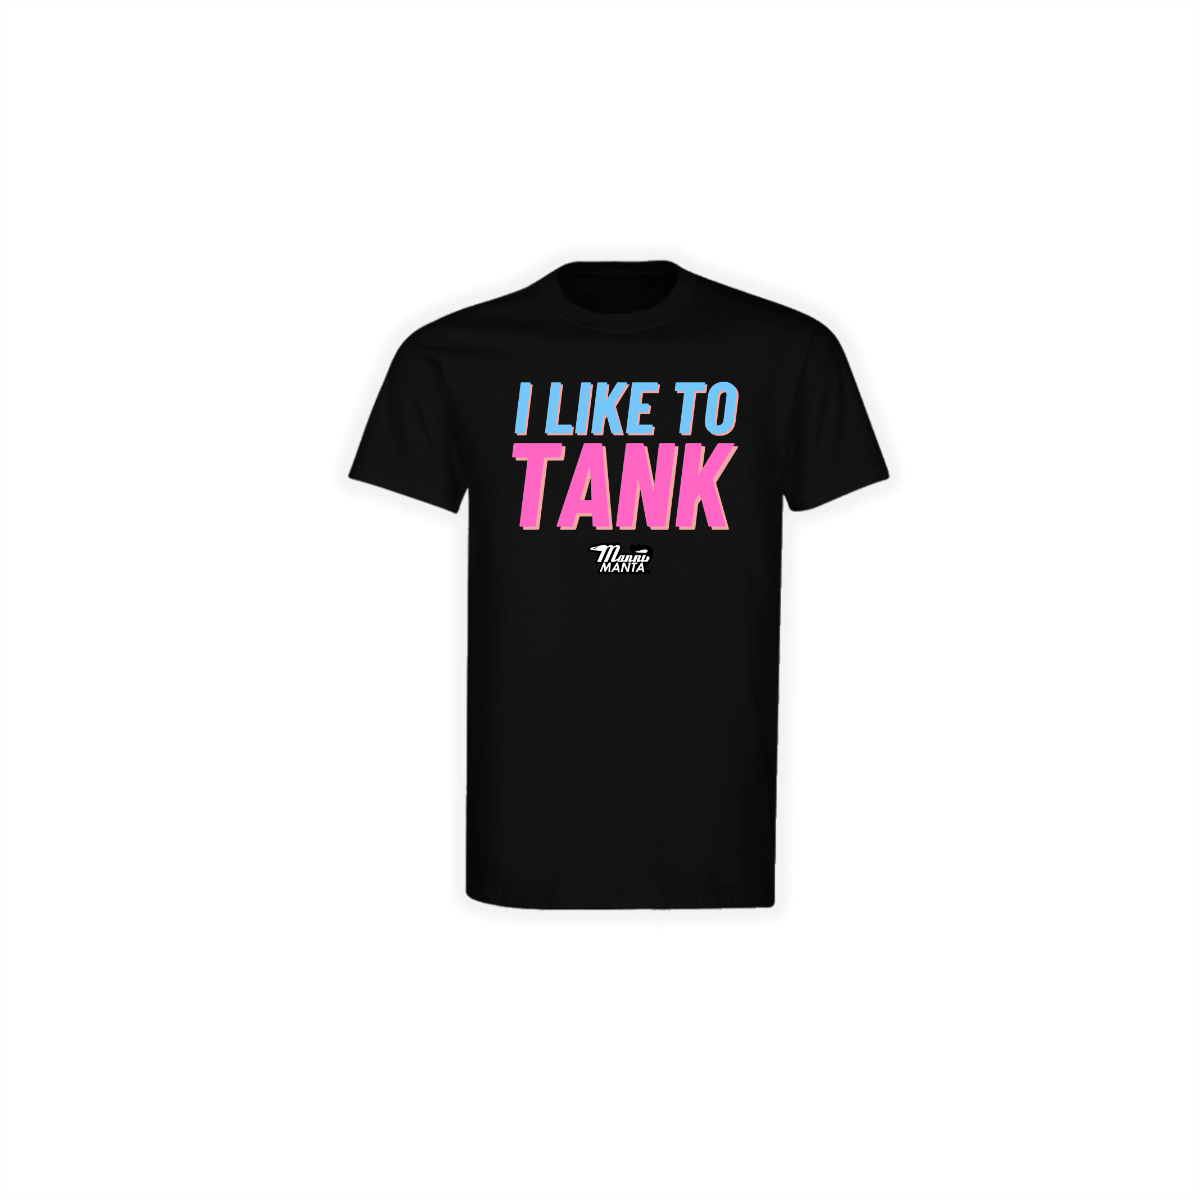 T-Shirt "I LIKE TO TANK" schwarz